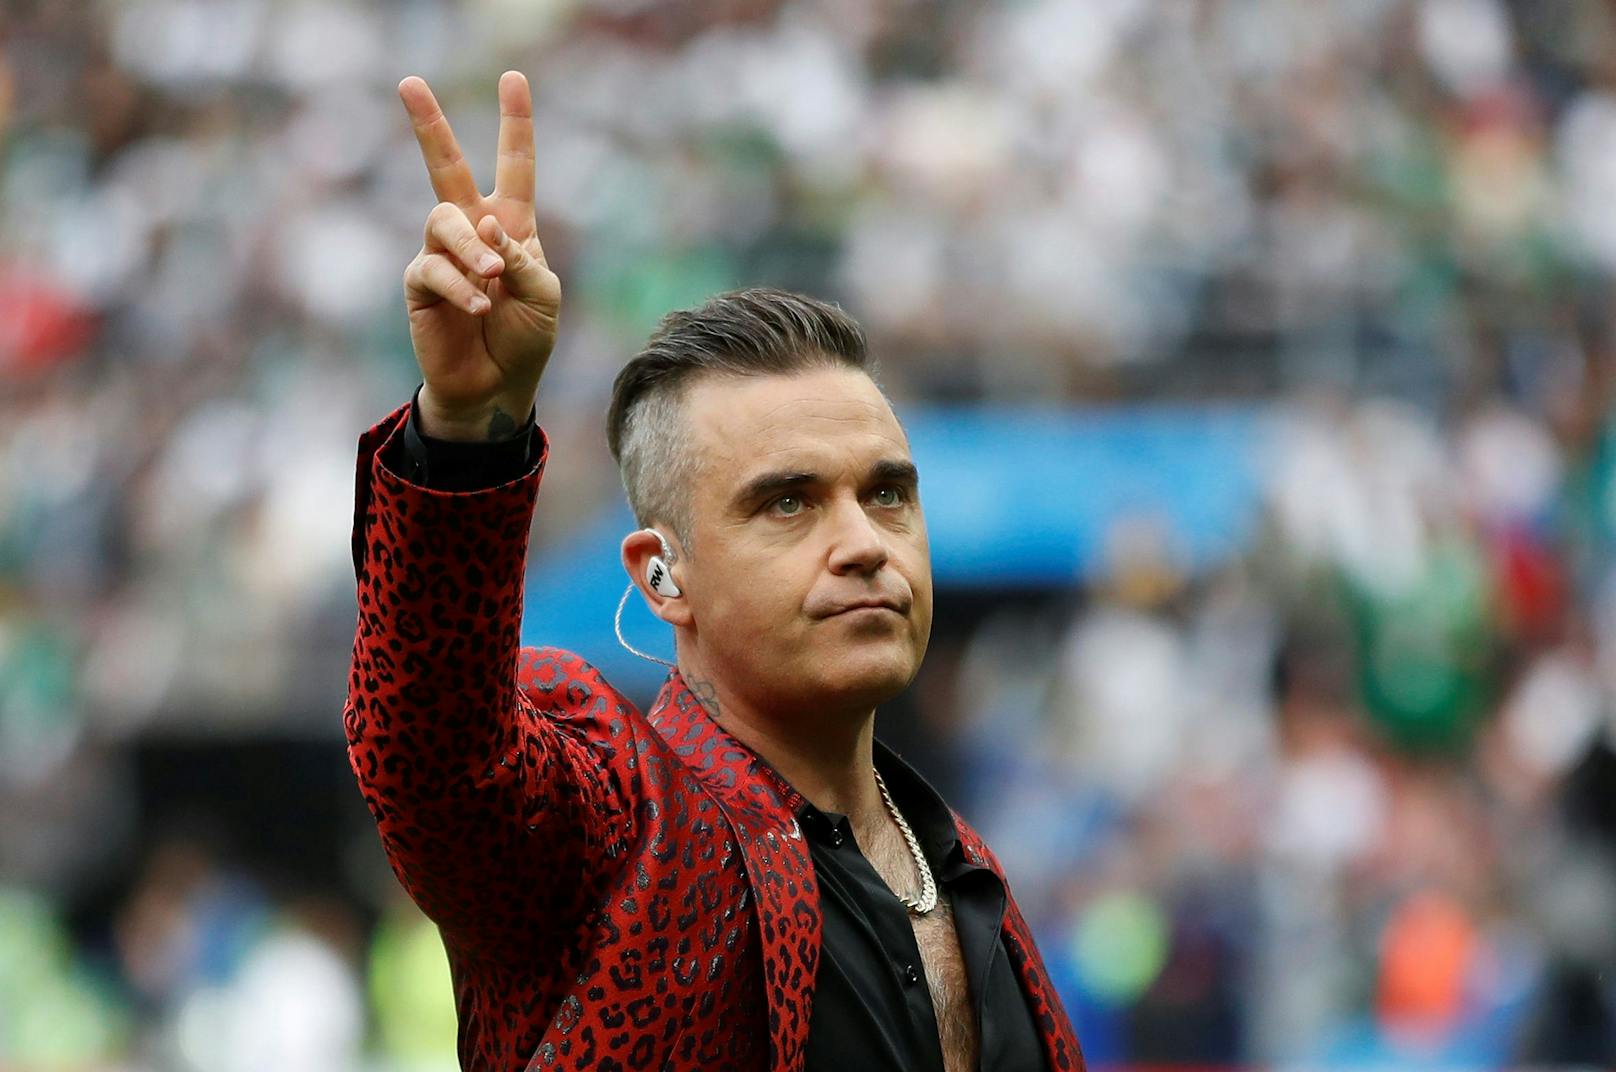 Auch von Robbie Williams gab es einen Korb für den Royal. "Take That" wird ohne ihn auftreten.